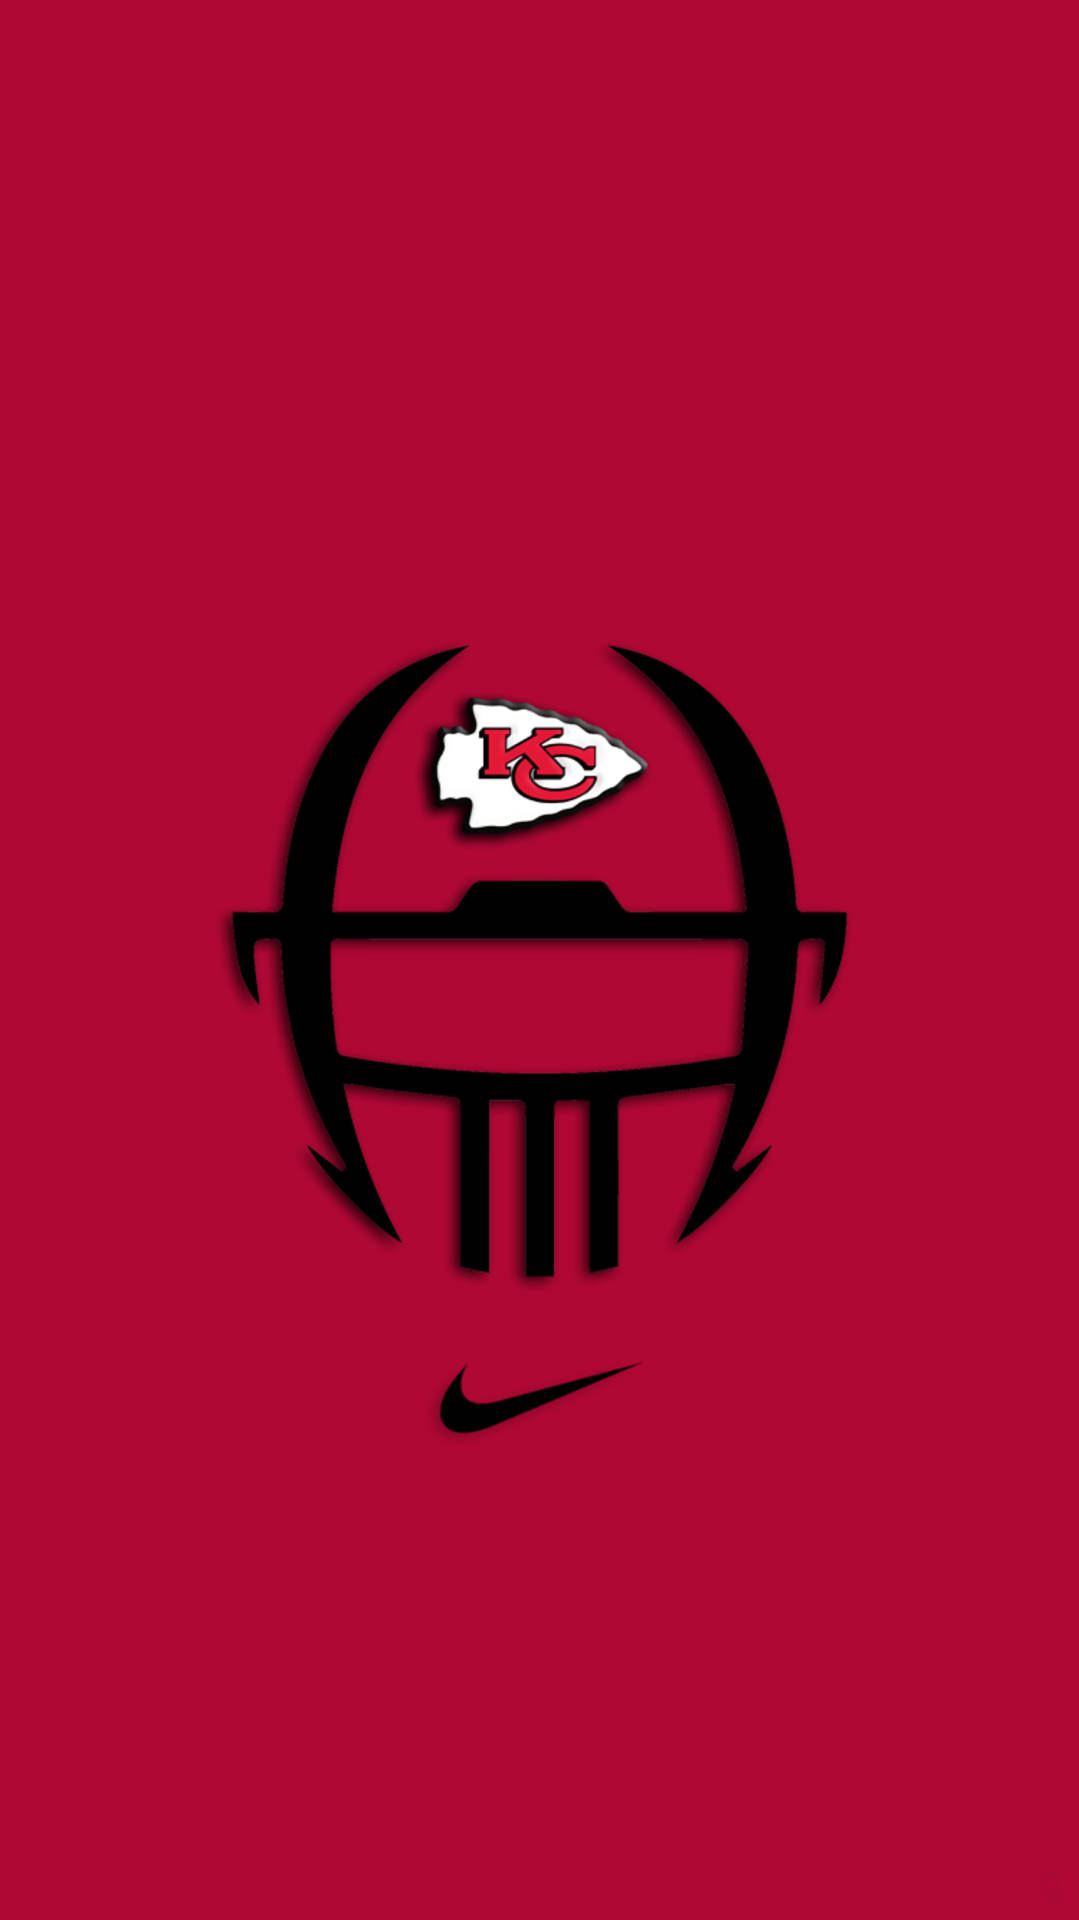 Red Helmet KC Chiefs Phone Wallpaper